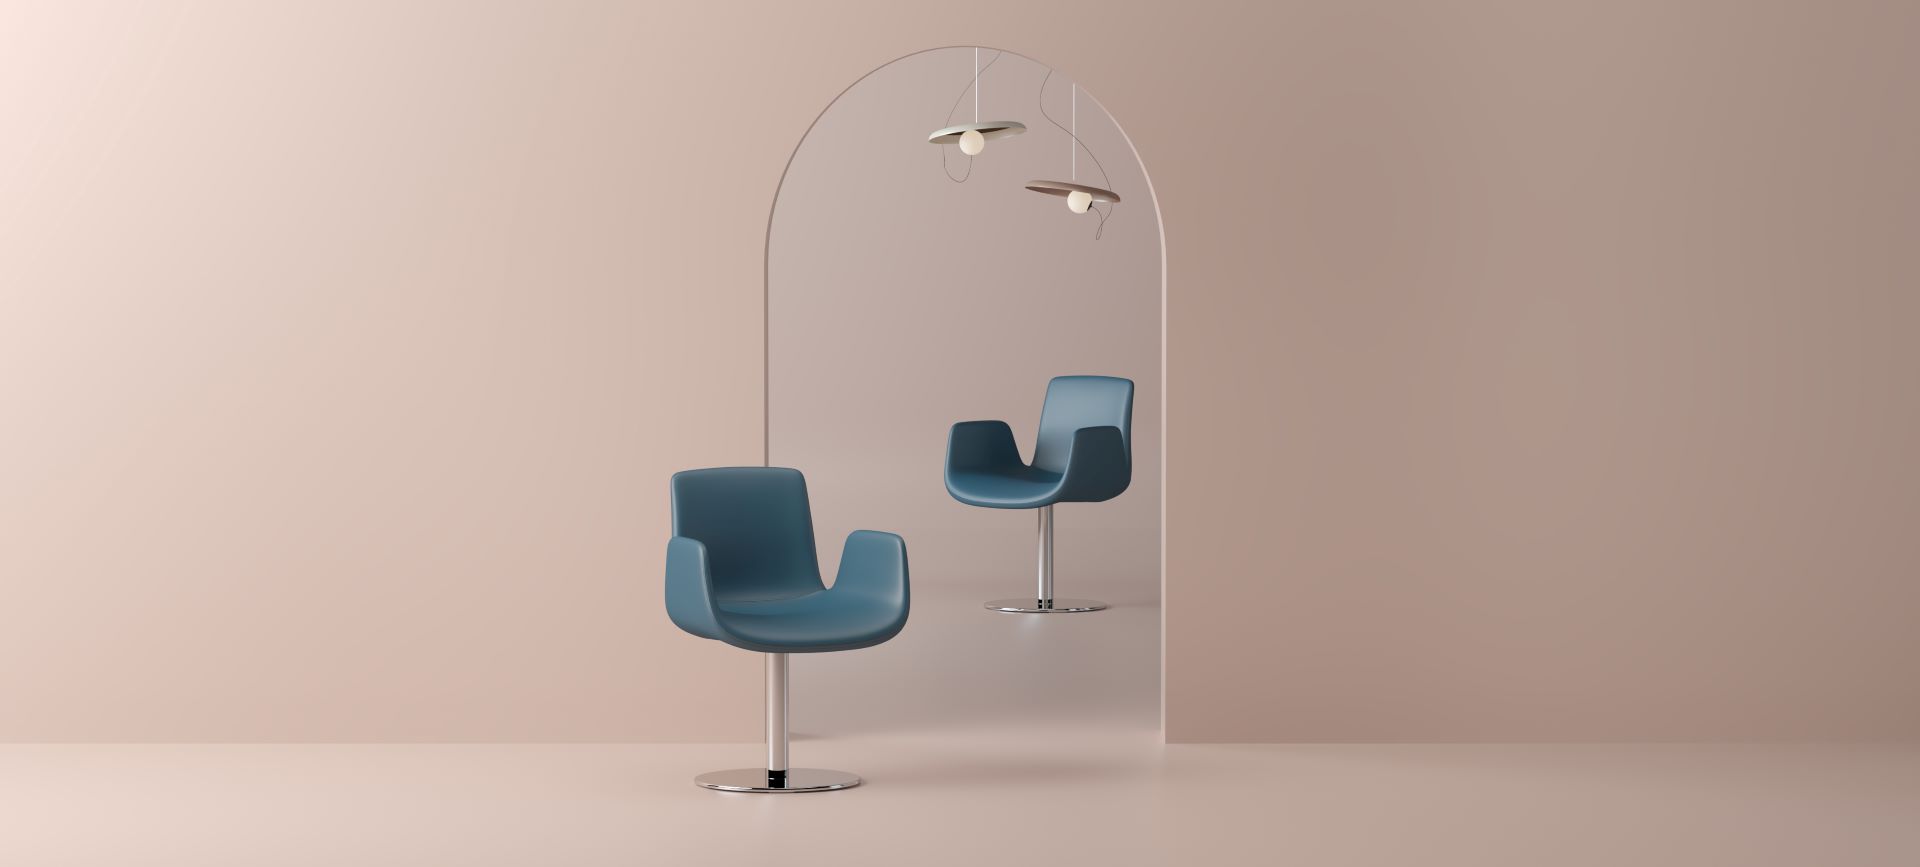 Twee stoelen in een lege ruimte met lampen